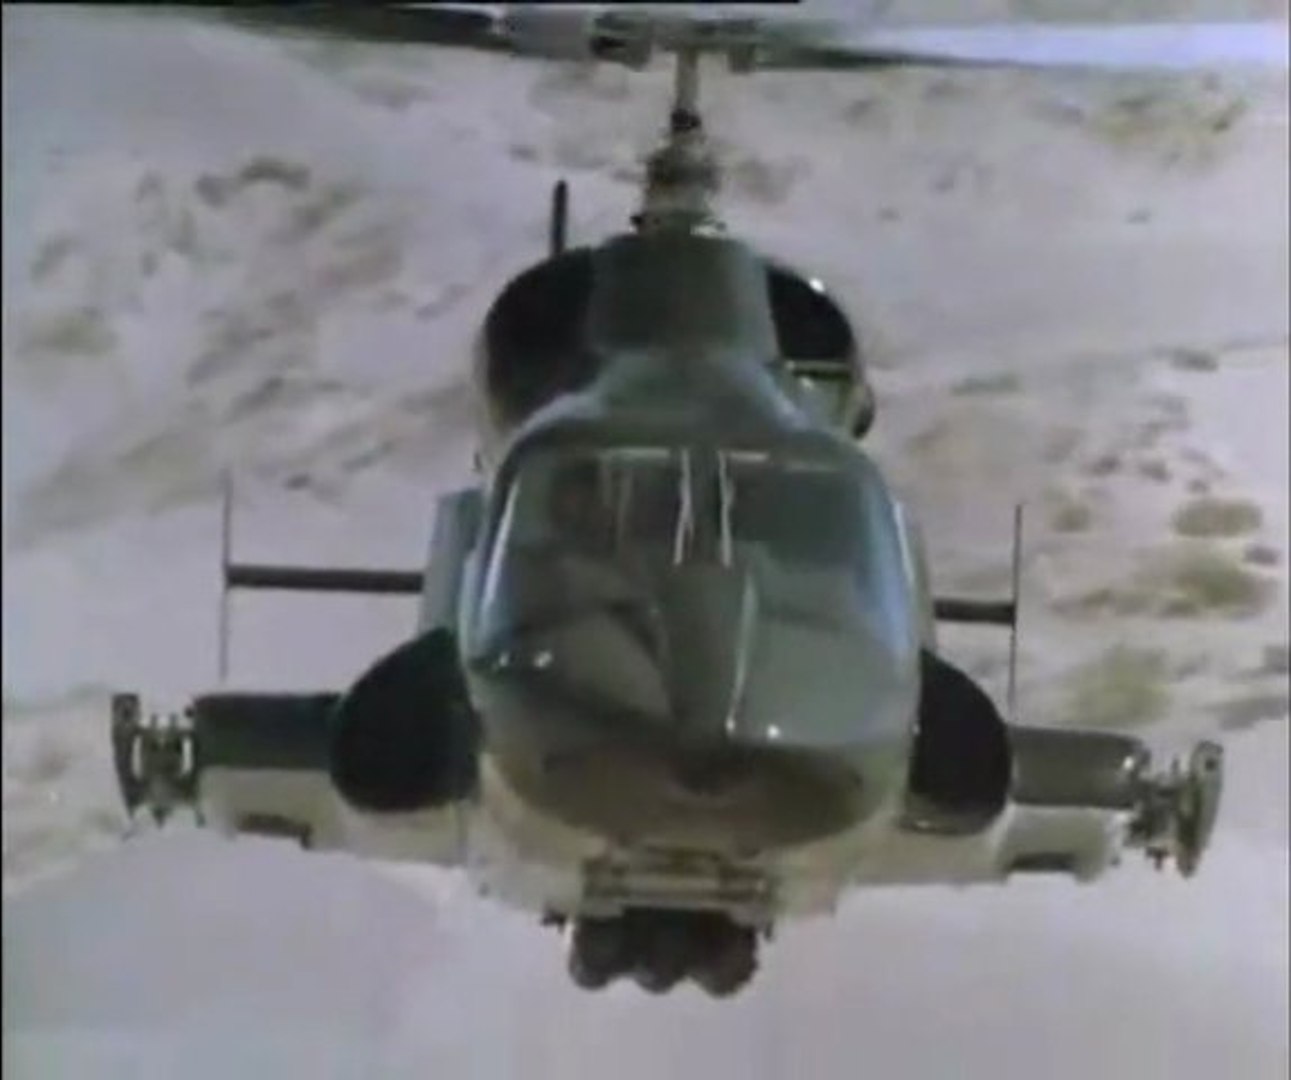 Supercopter générique - Vidéo Dailymotion